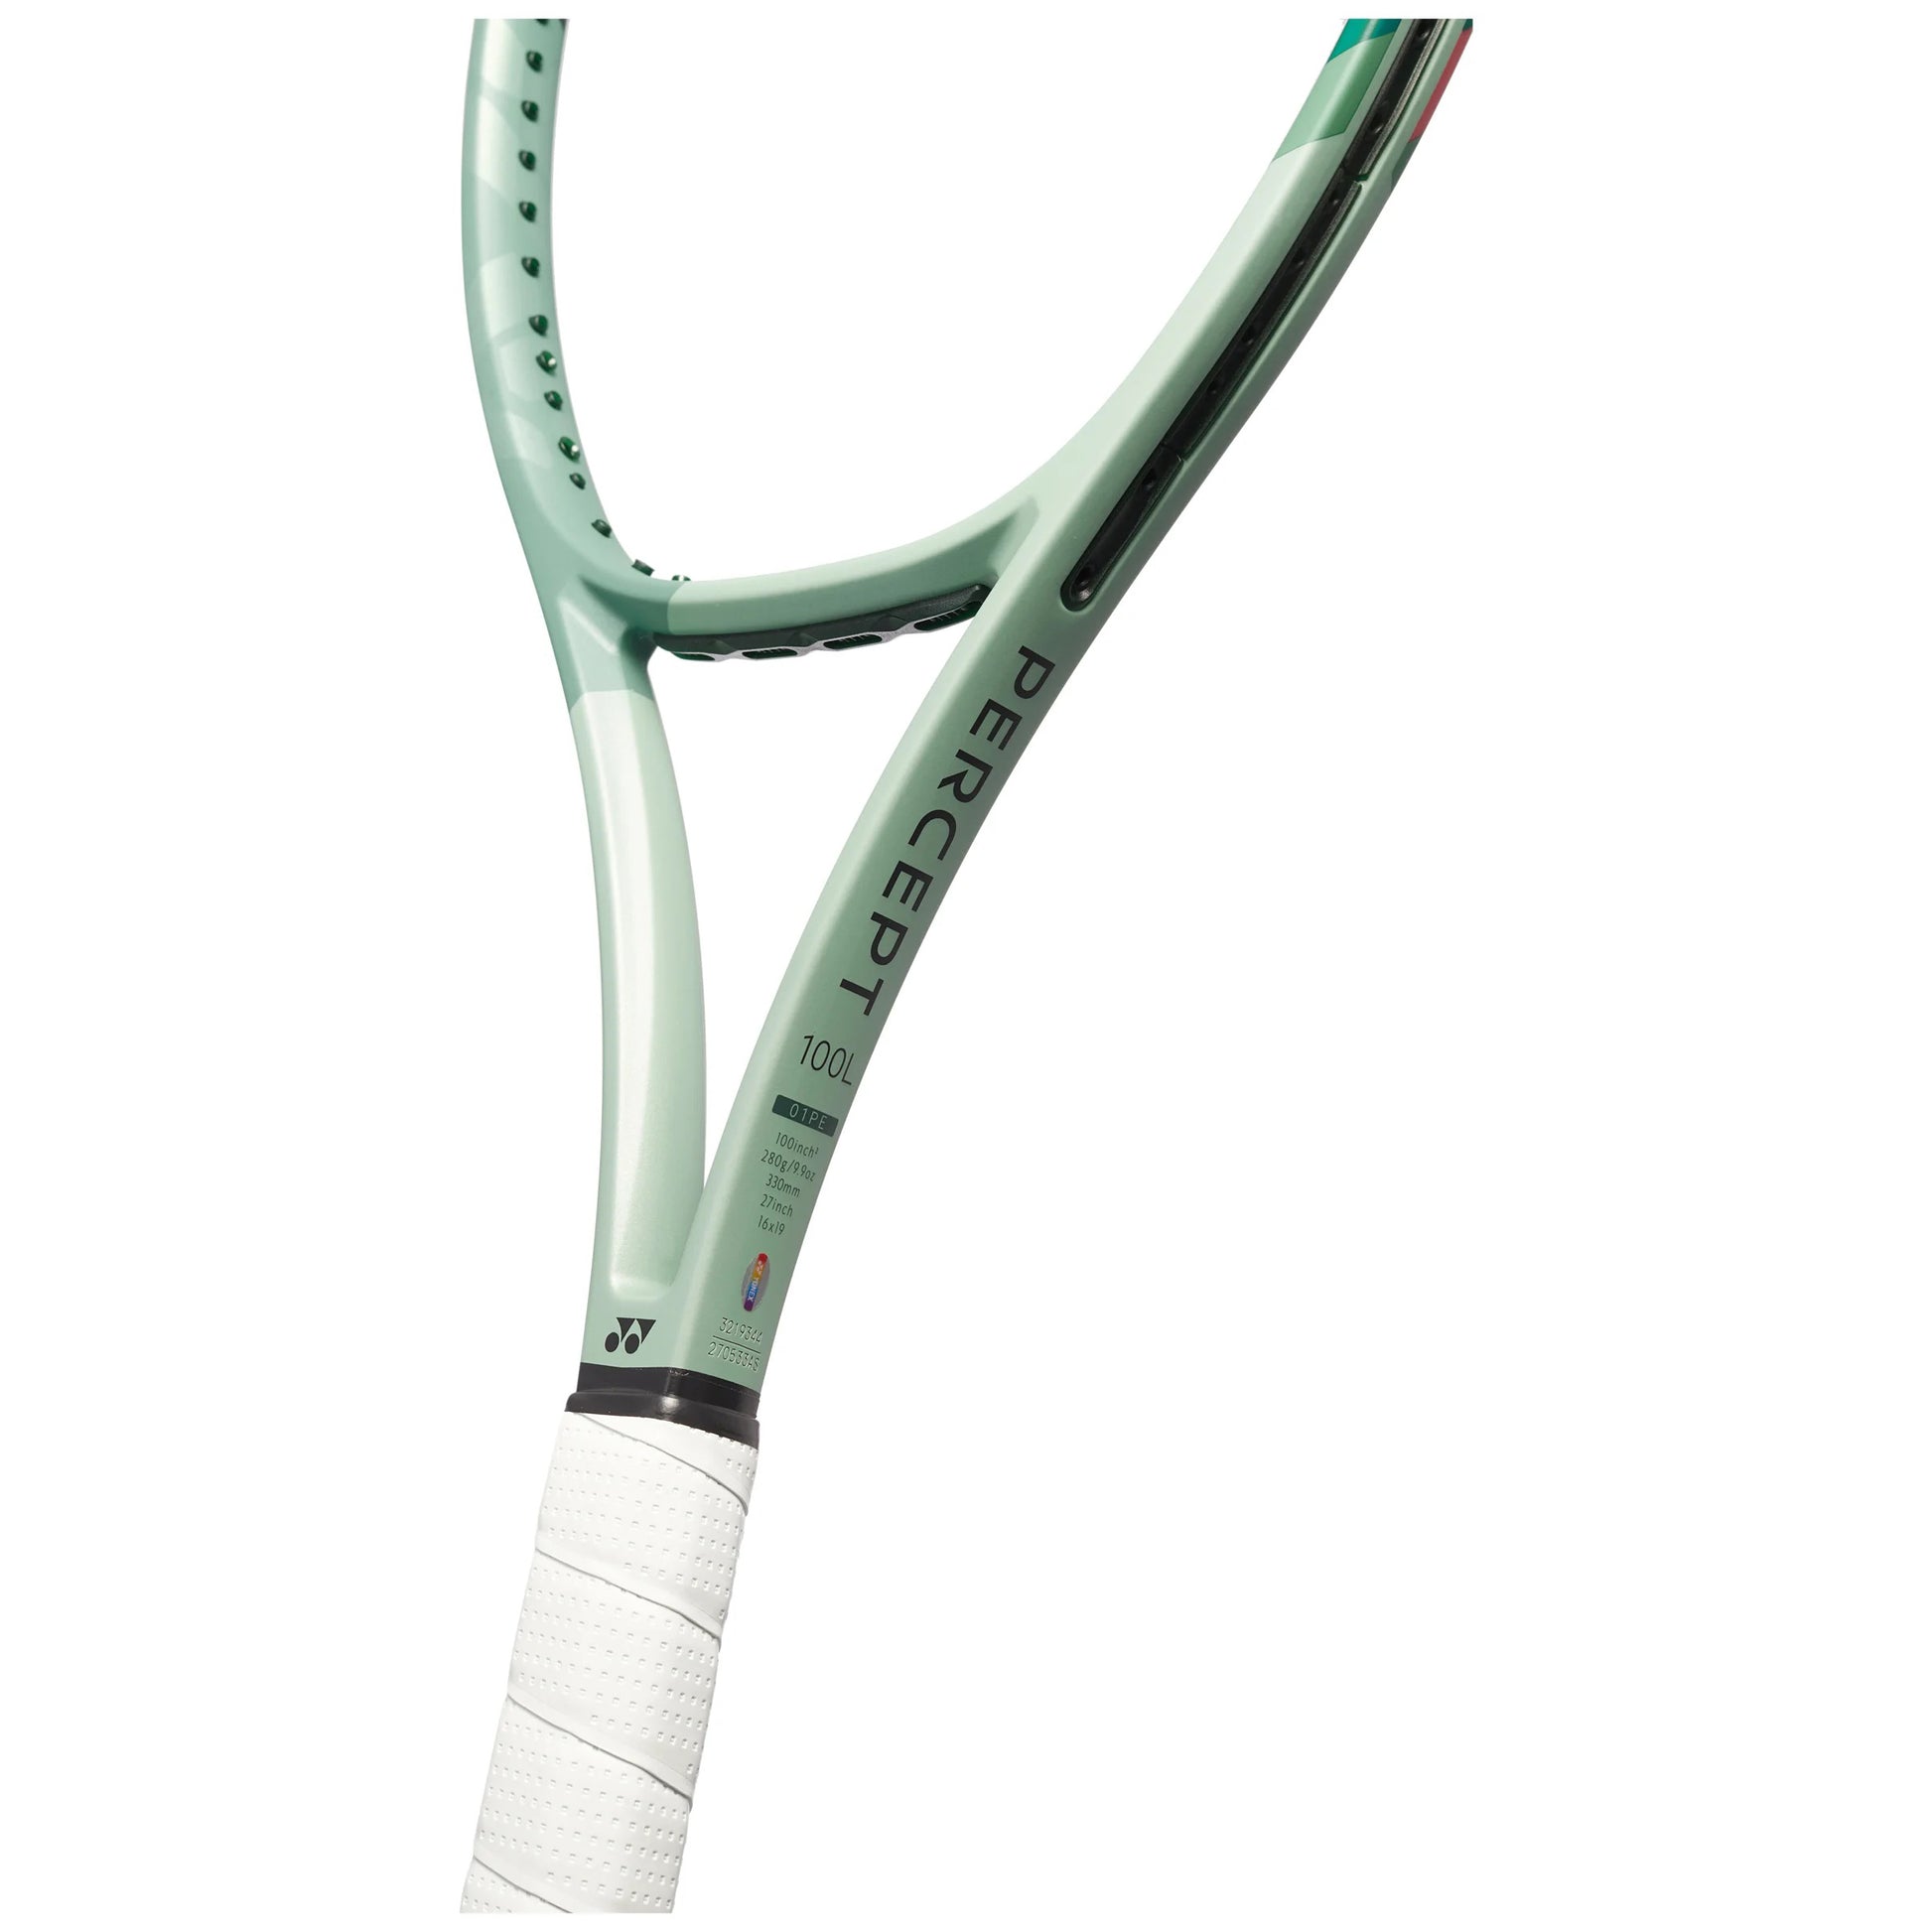 Yonex Percept 100L Unstrung Tennis Racquet, 280Grams - Best Price online Prokicksports.com